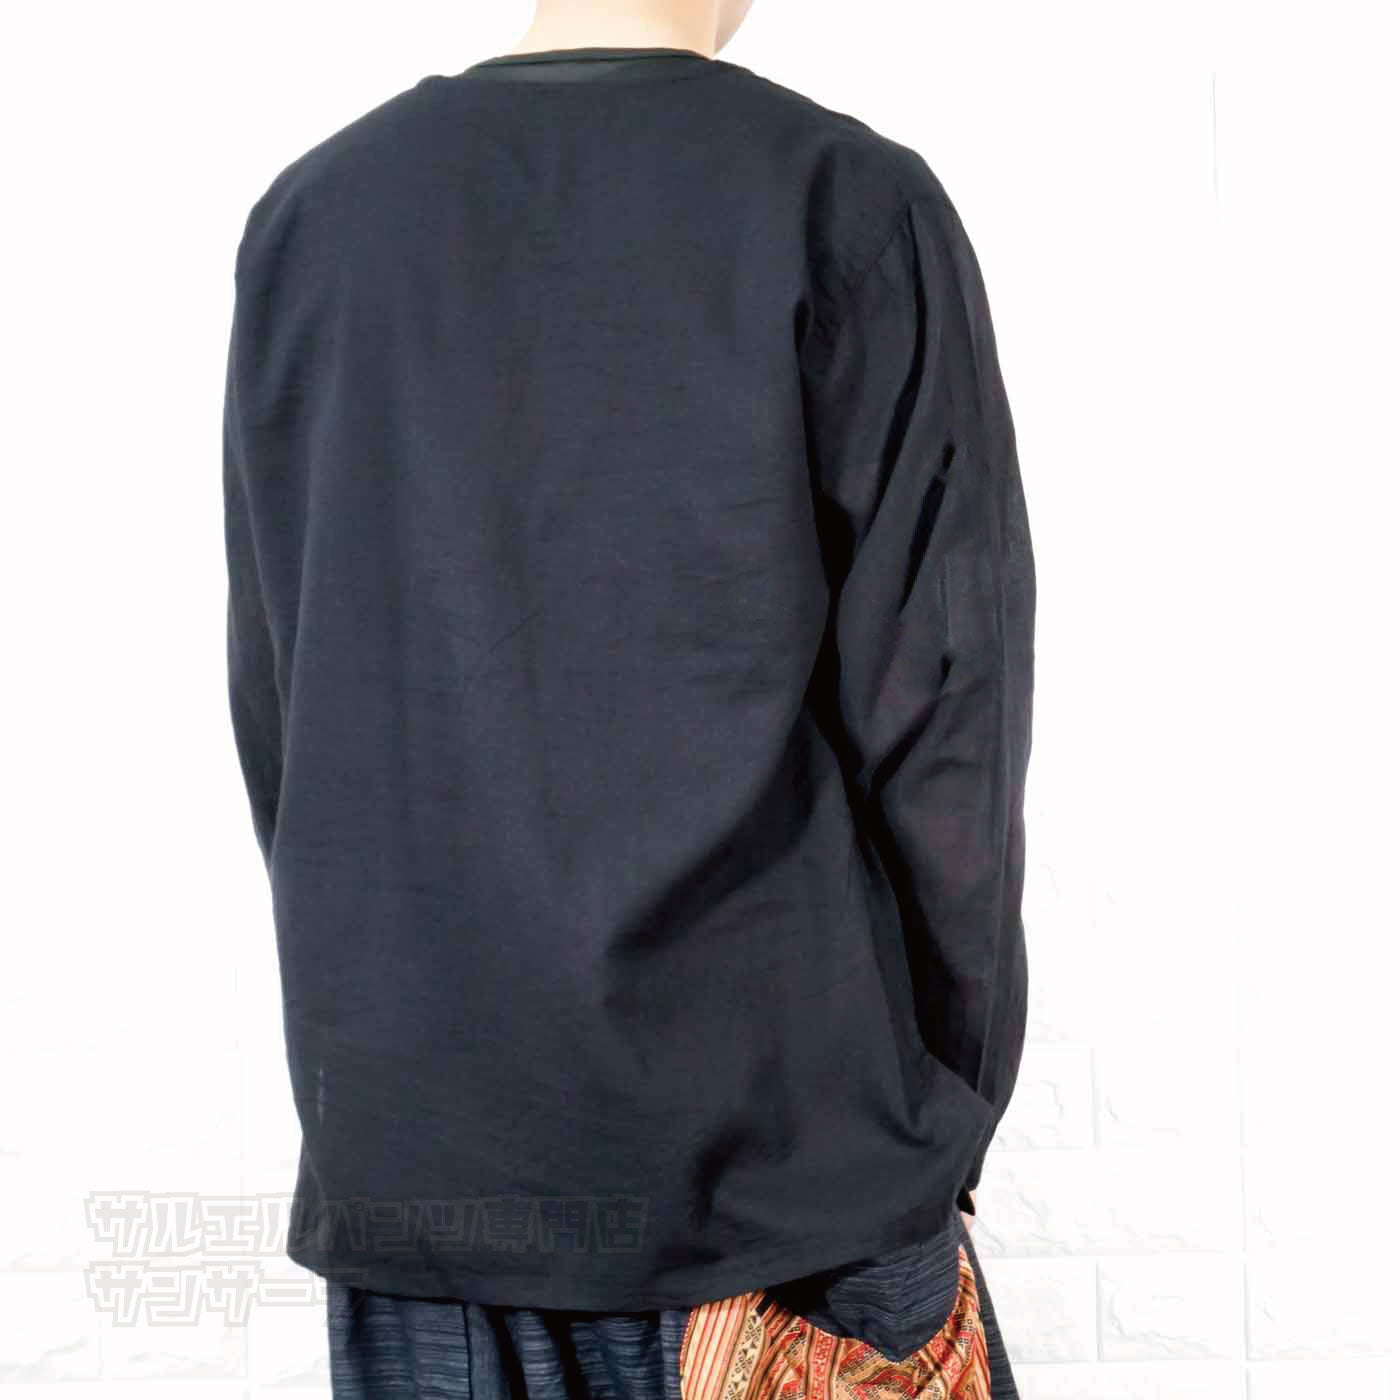 エスニック Tシャツ 長袖 クルタシャツ トップス メンズ レディース ユニセックス 渦巻き 大きめサイズ ゆったり アジアン ファッションブラック